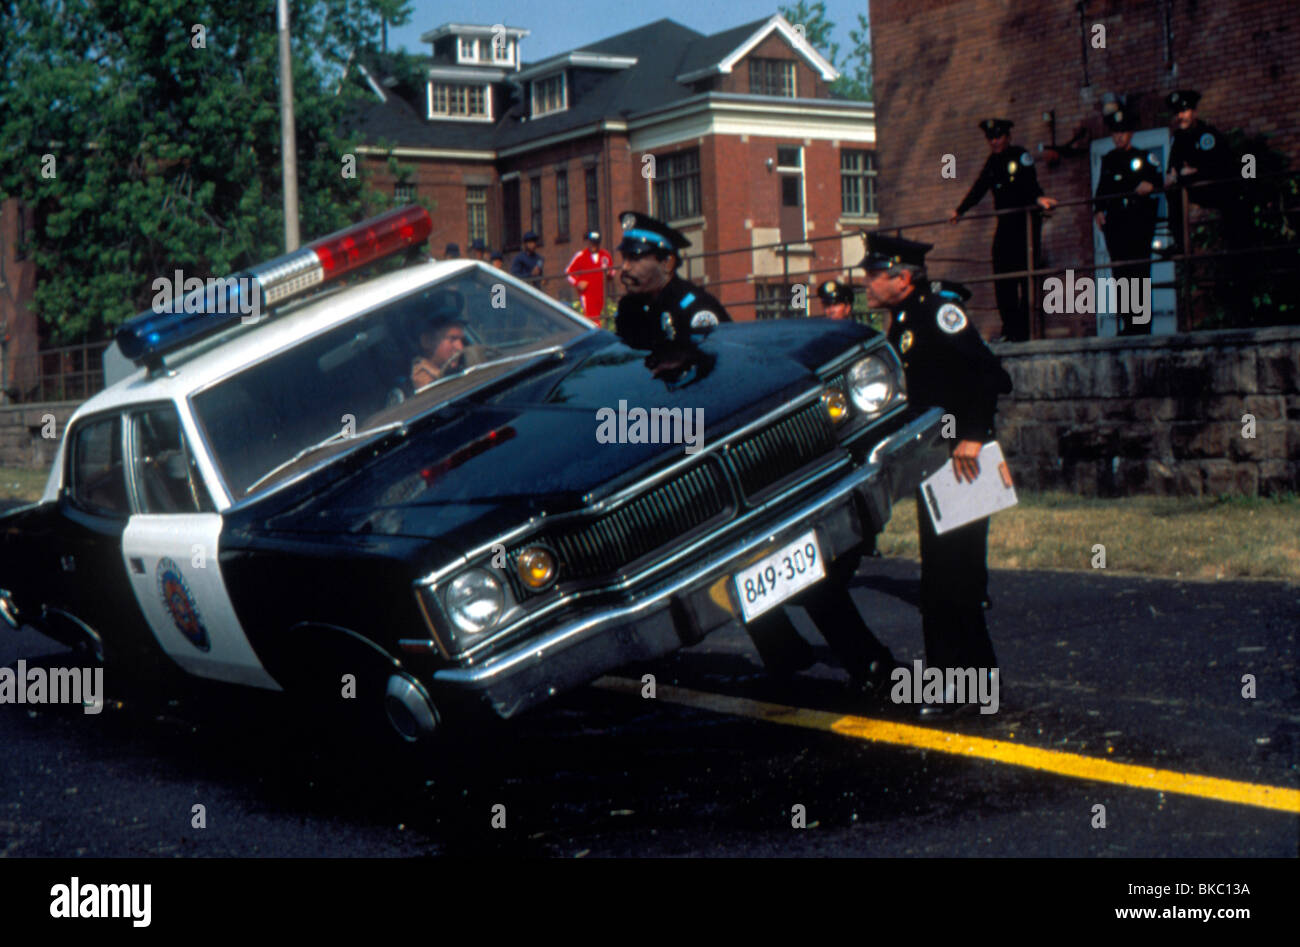 POLICE ACADEMY (1984) BUBBA SMITH, G W BAILEY POLICE CAR PLA 023 Stock  Photo - Alamy